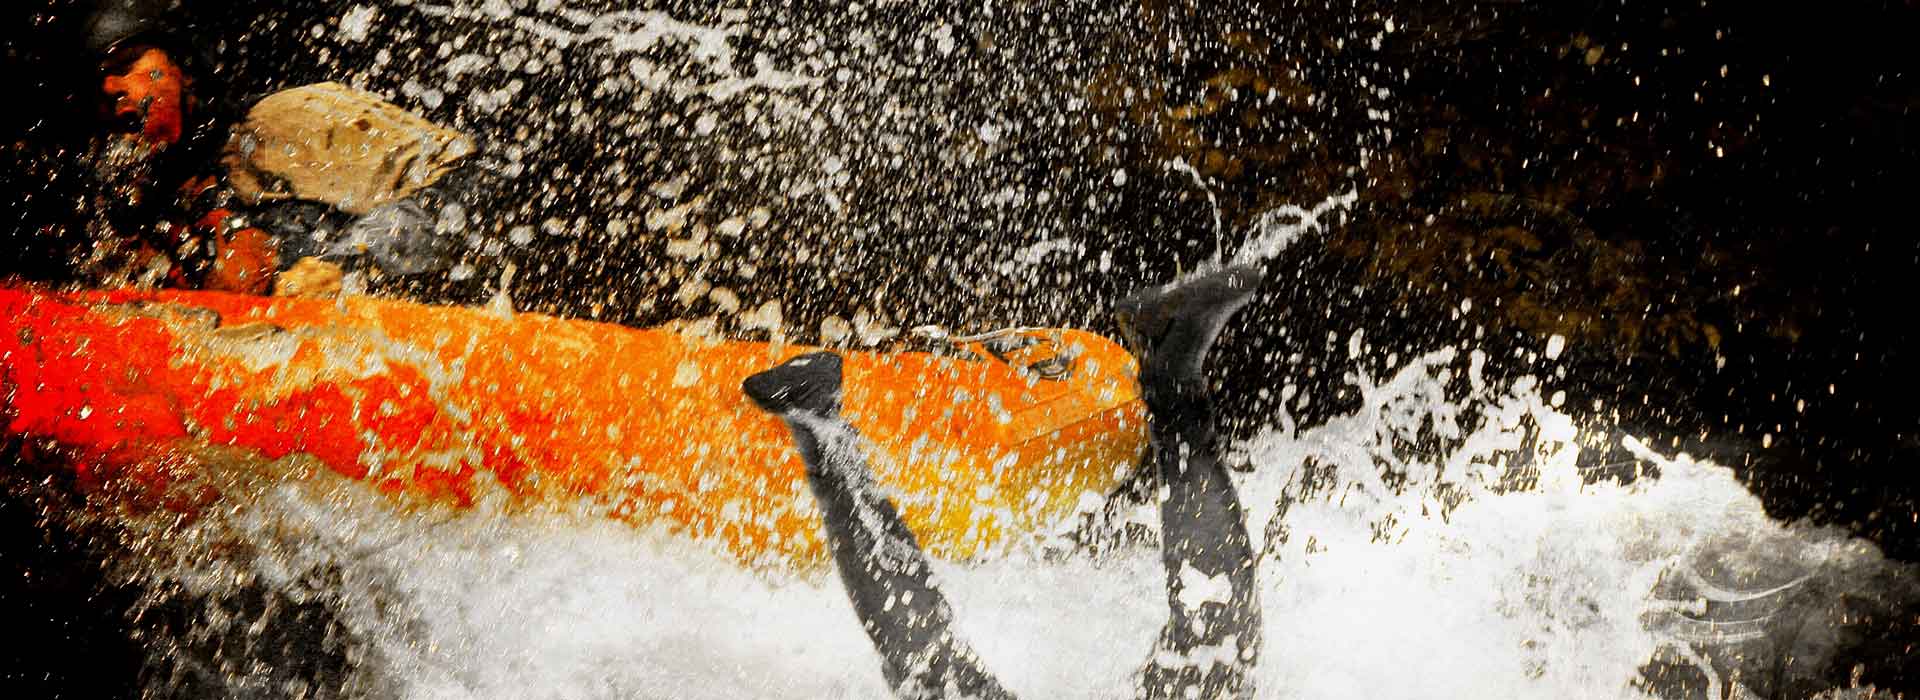 Éjection d'un homme du canoraft dans les rapides, les 2 jambes sont encore en l'air et le reste du corps dans l'eau